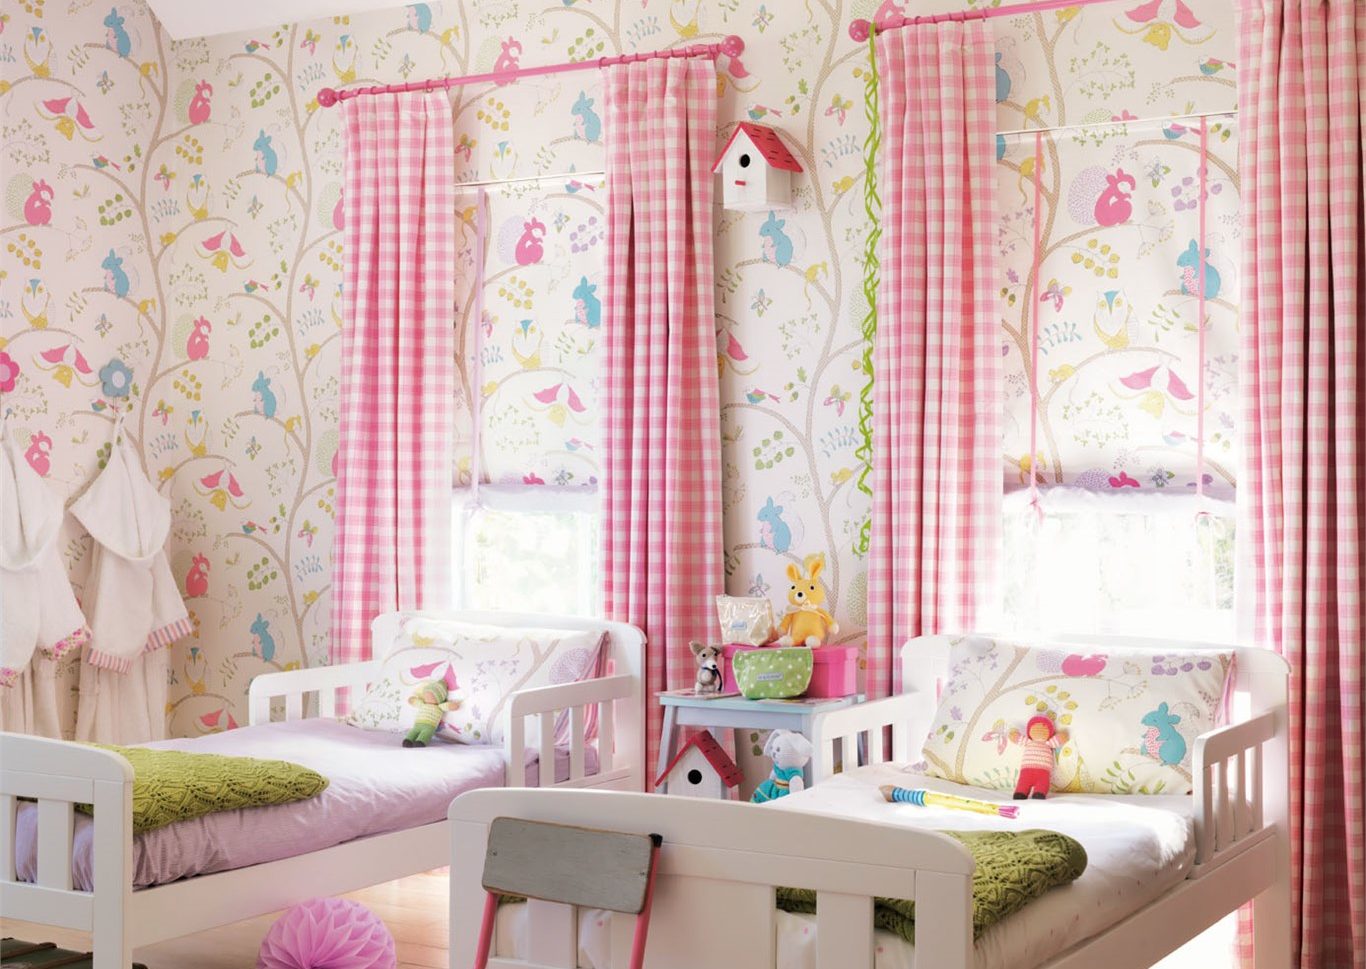 Zwei Kinderbetten stehen vor zwei Fenster und bunter Tapete.